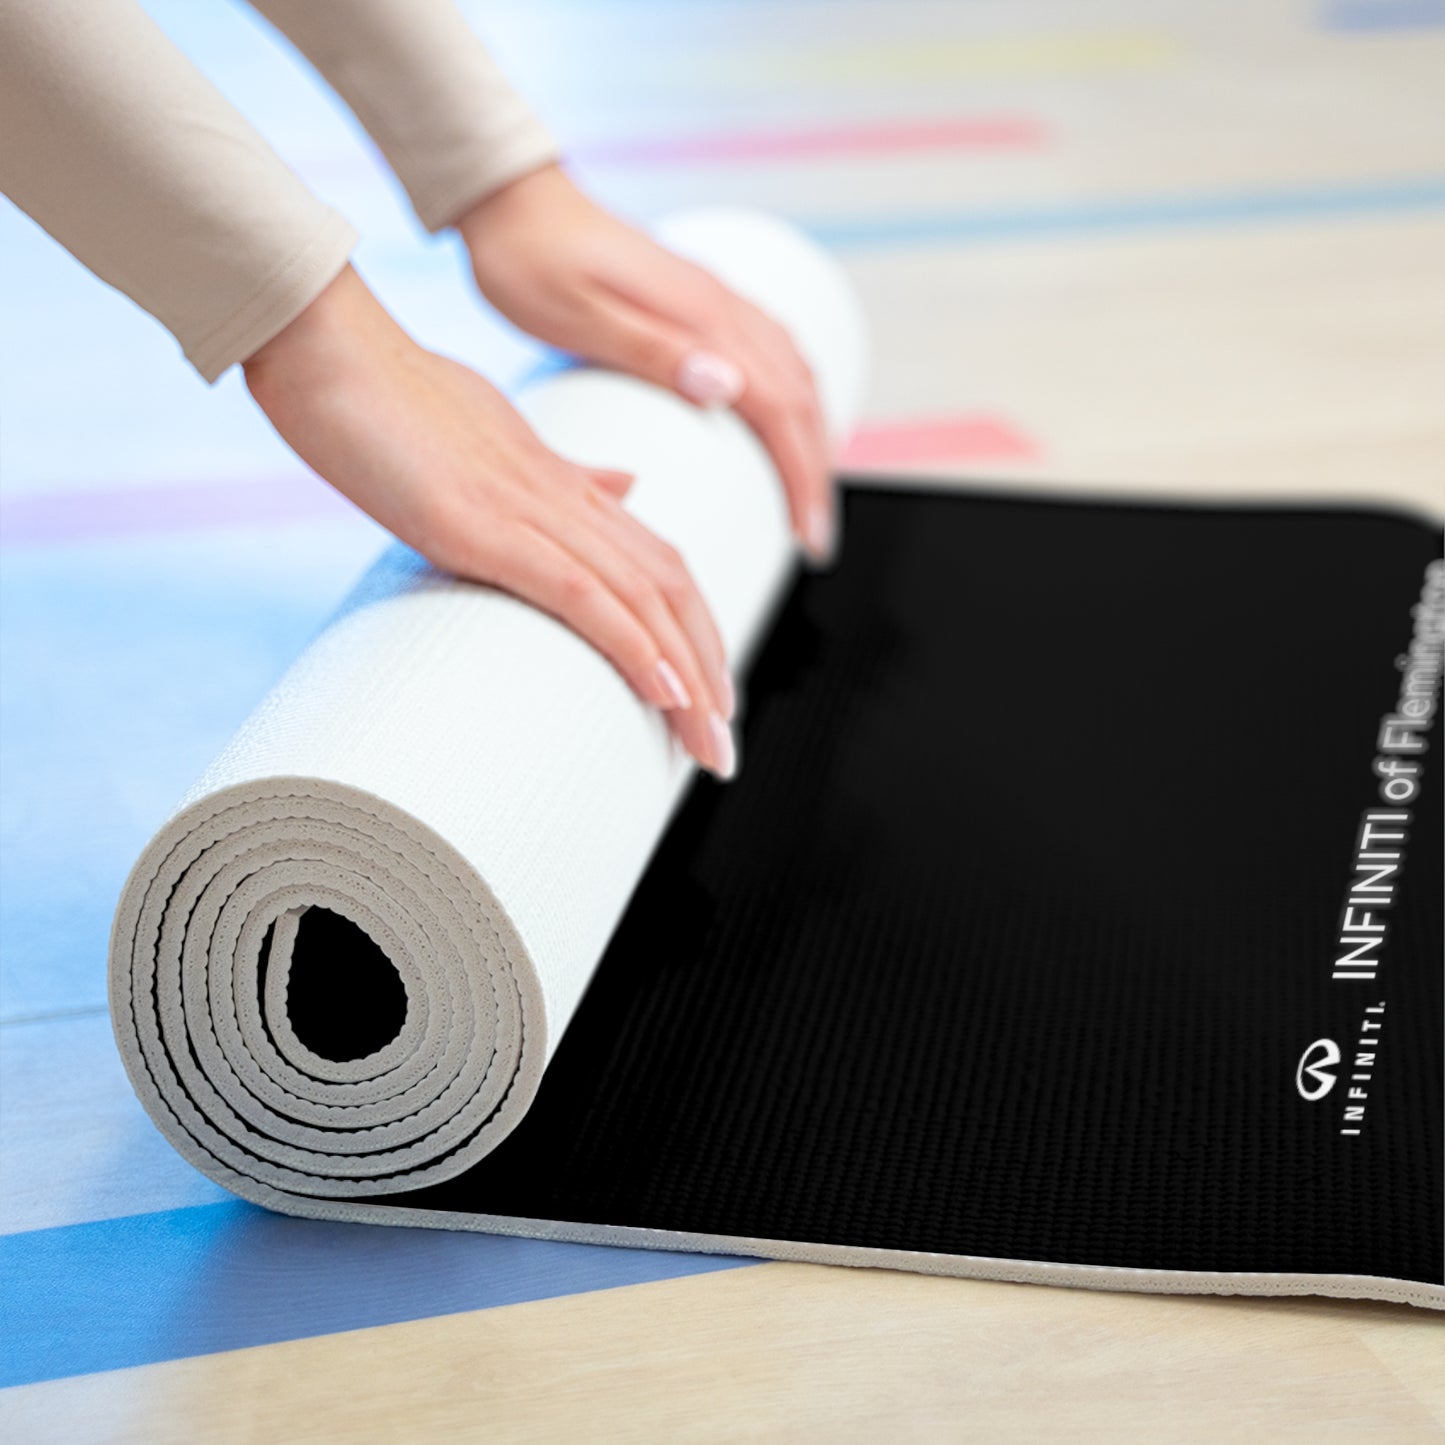 Foam Yoga Mat - INFINITI of Flemington